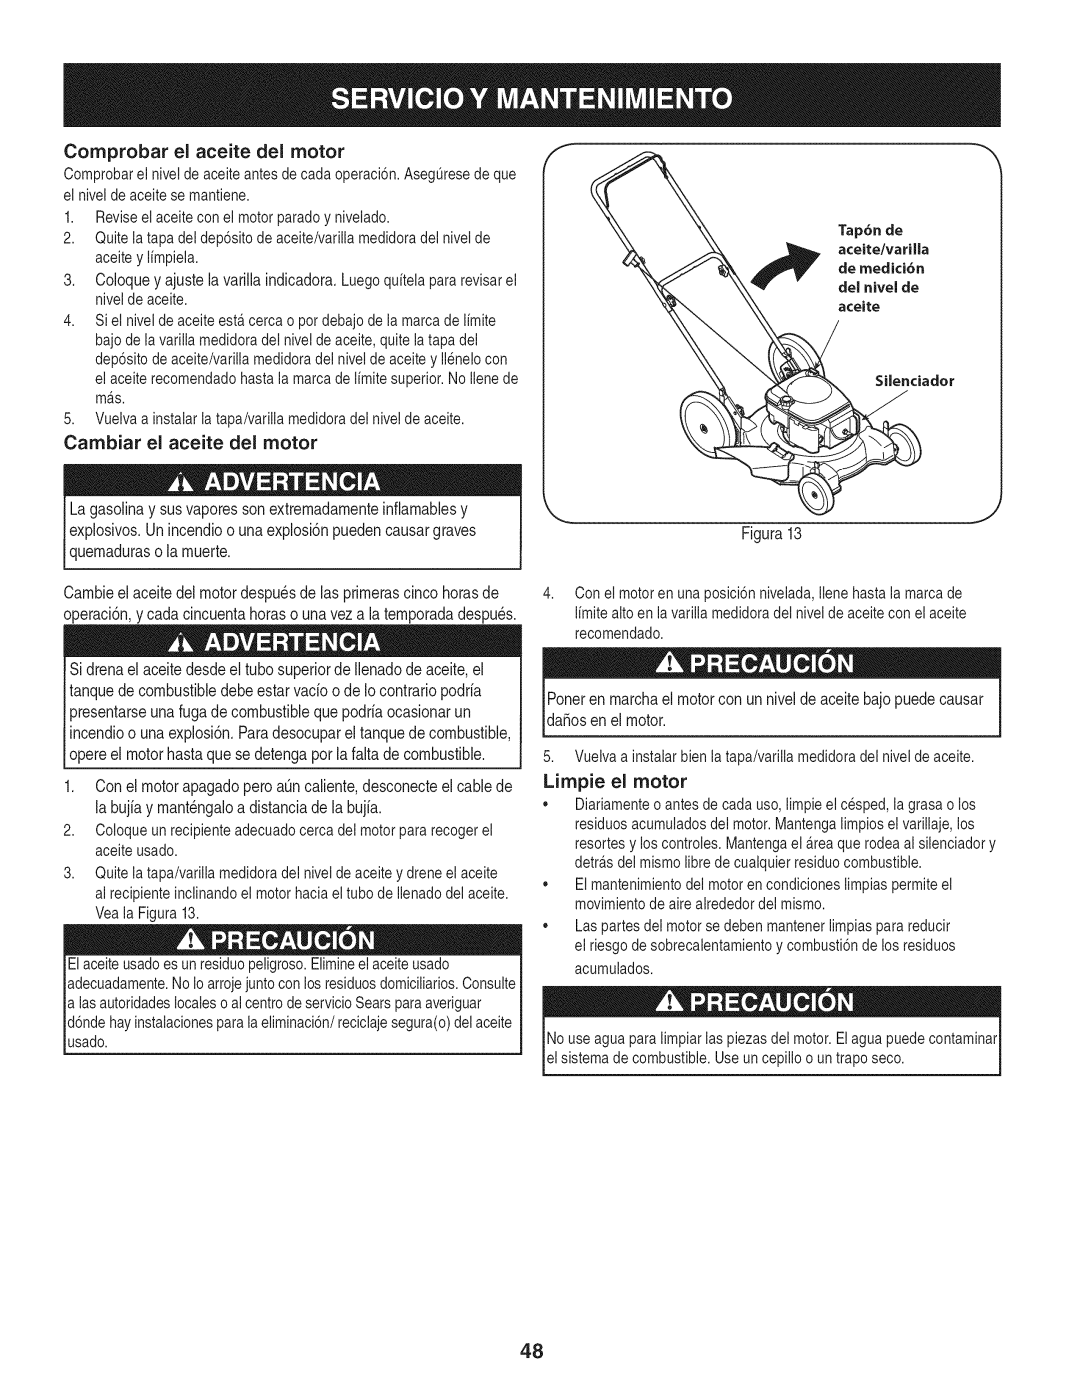 Craftsman 247.38528 manual Comprobar el aceite del motor, Cambiar el aceite del motor, Figura13, Limpie el motor 